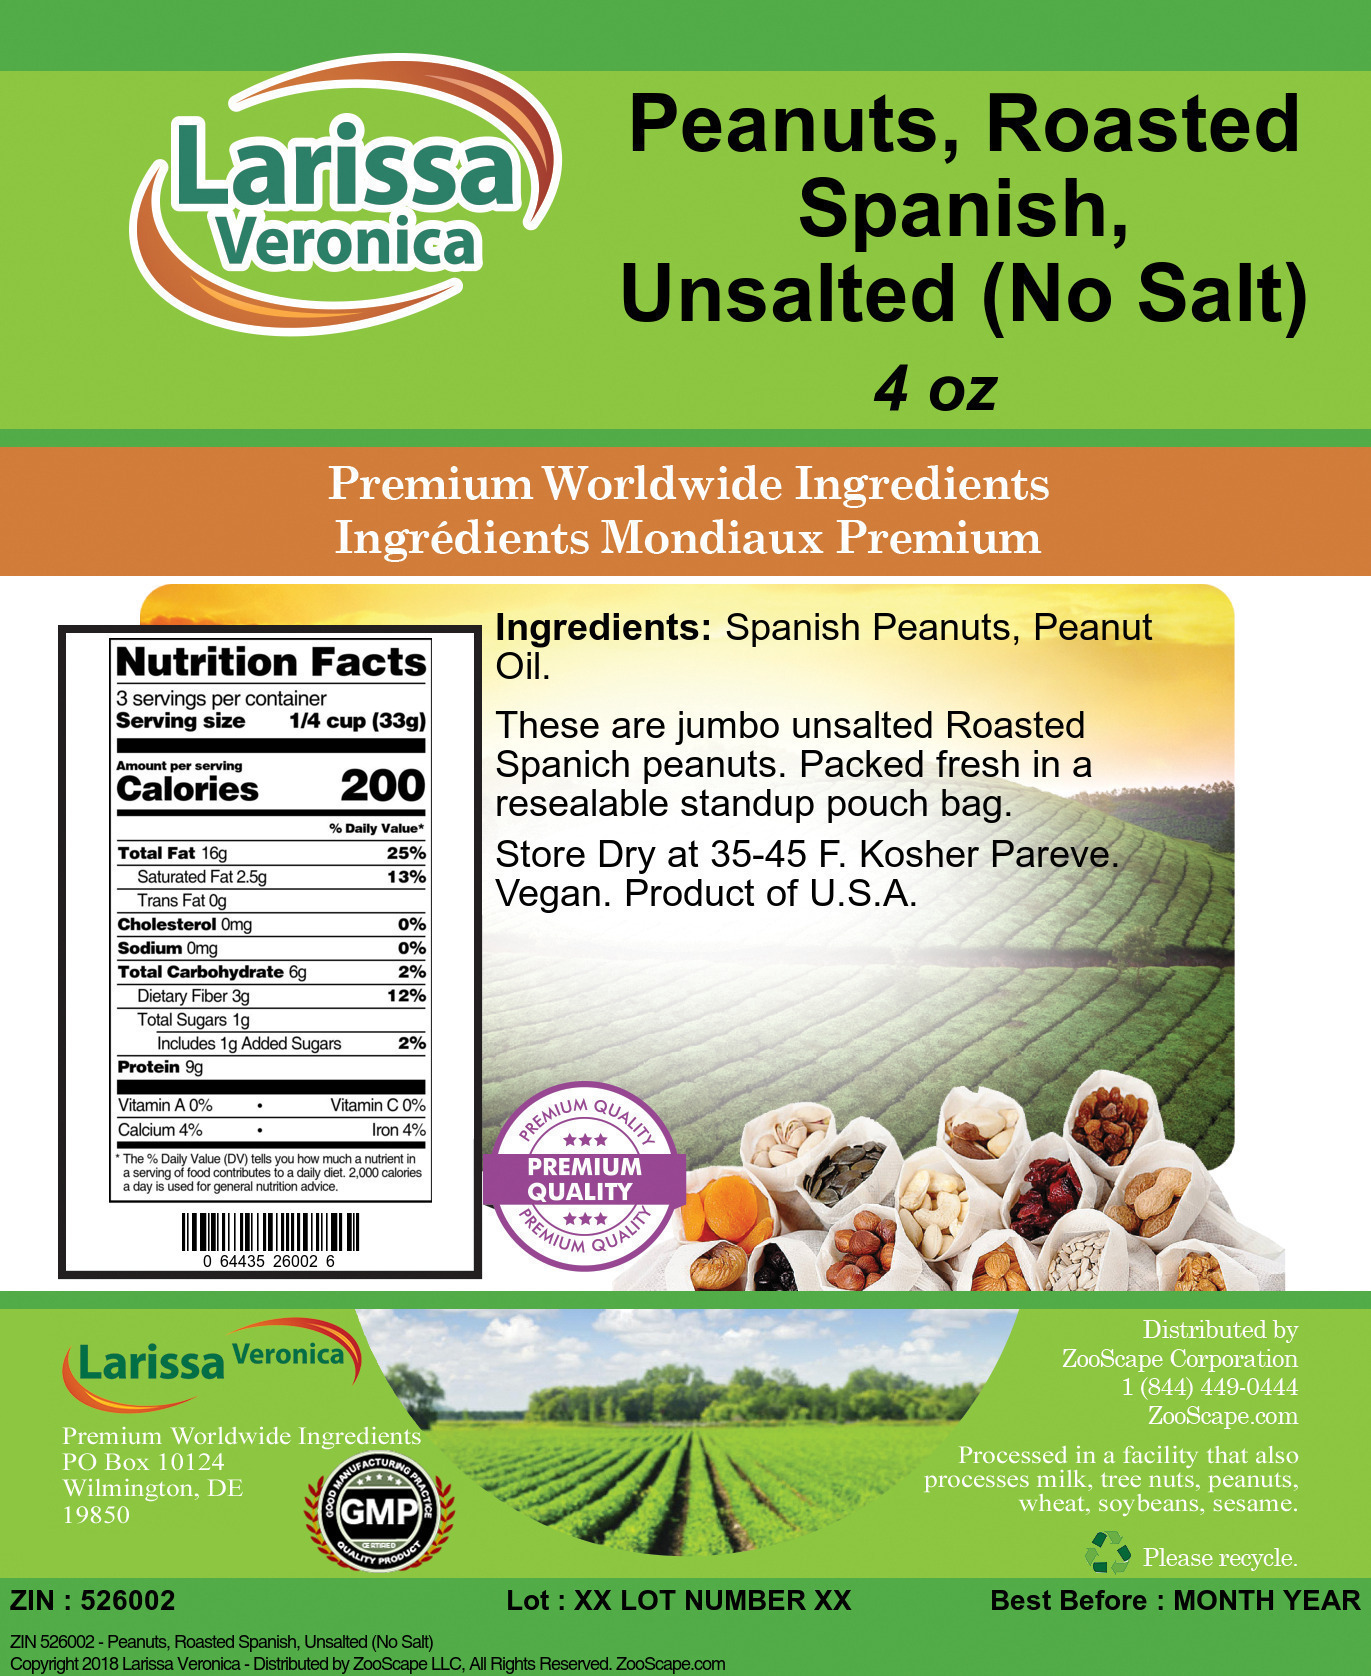 Peanuts, Roasted Spanish, Unsalted (No Salt) - Label